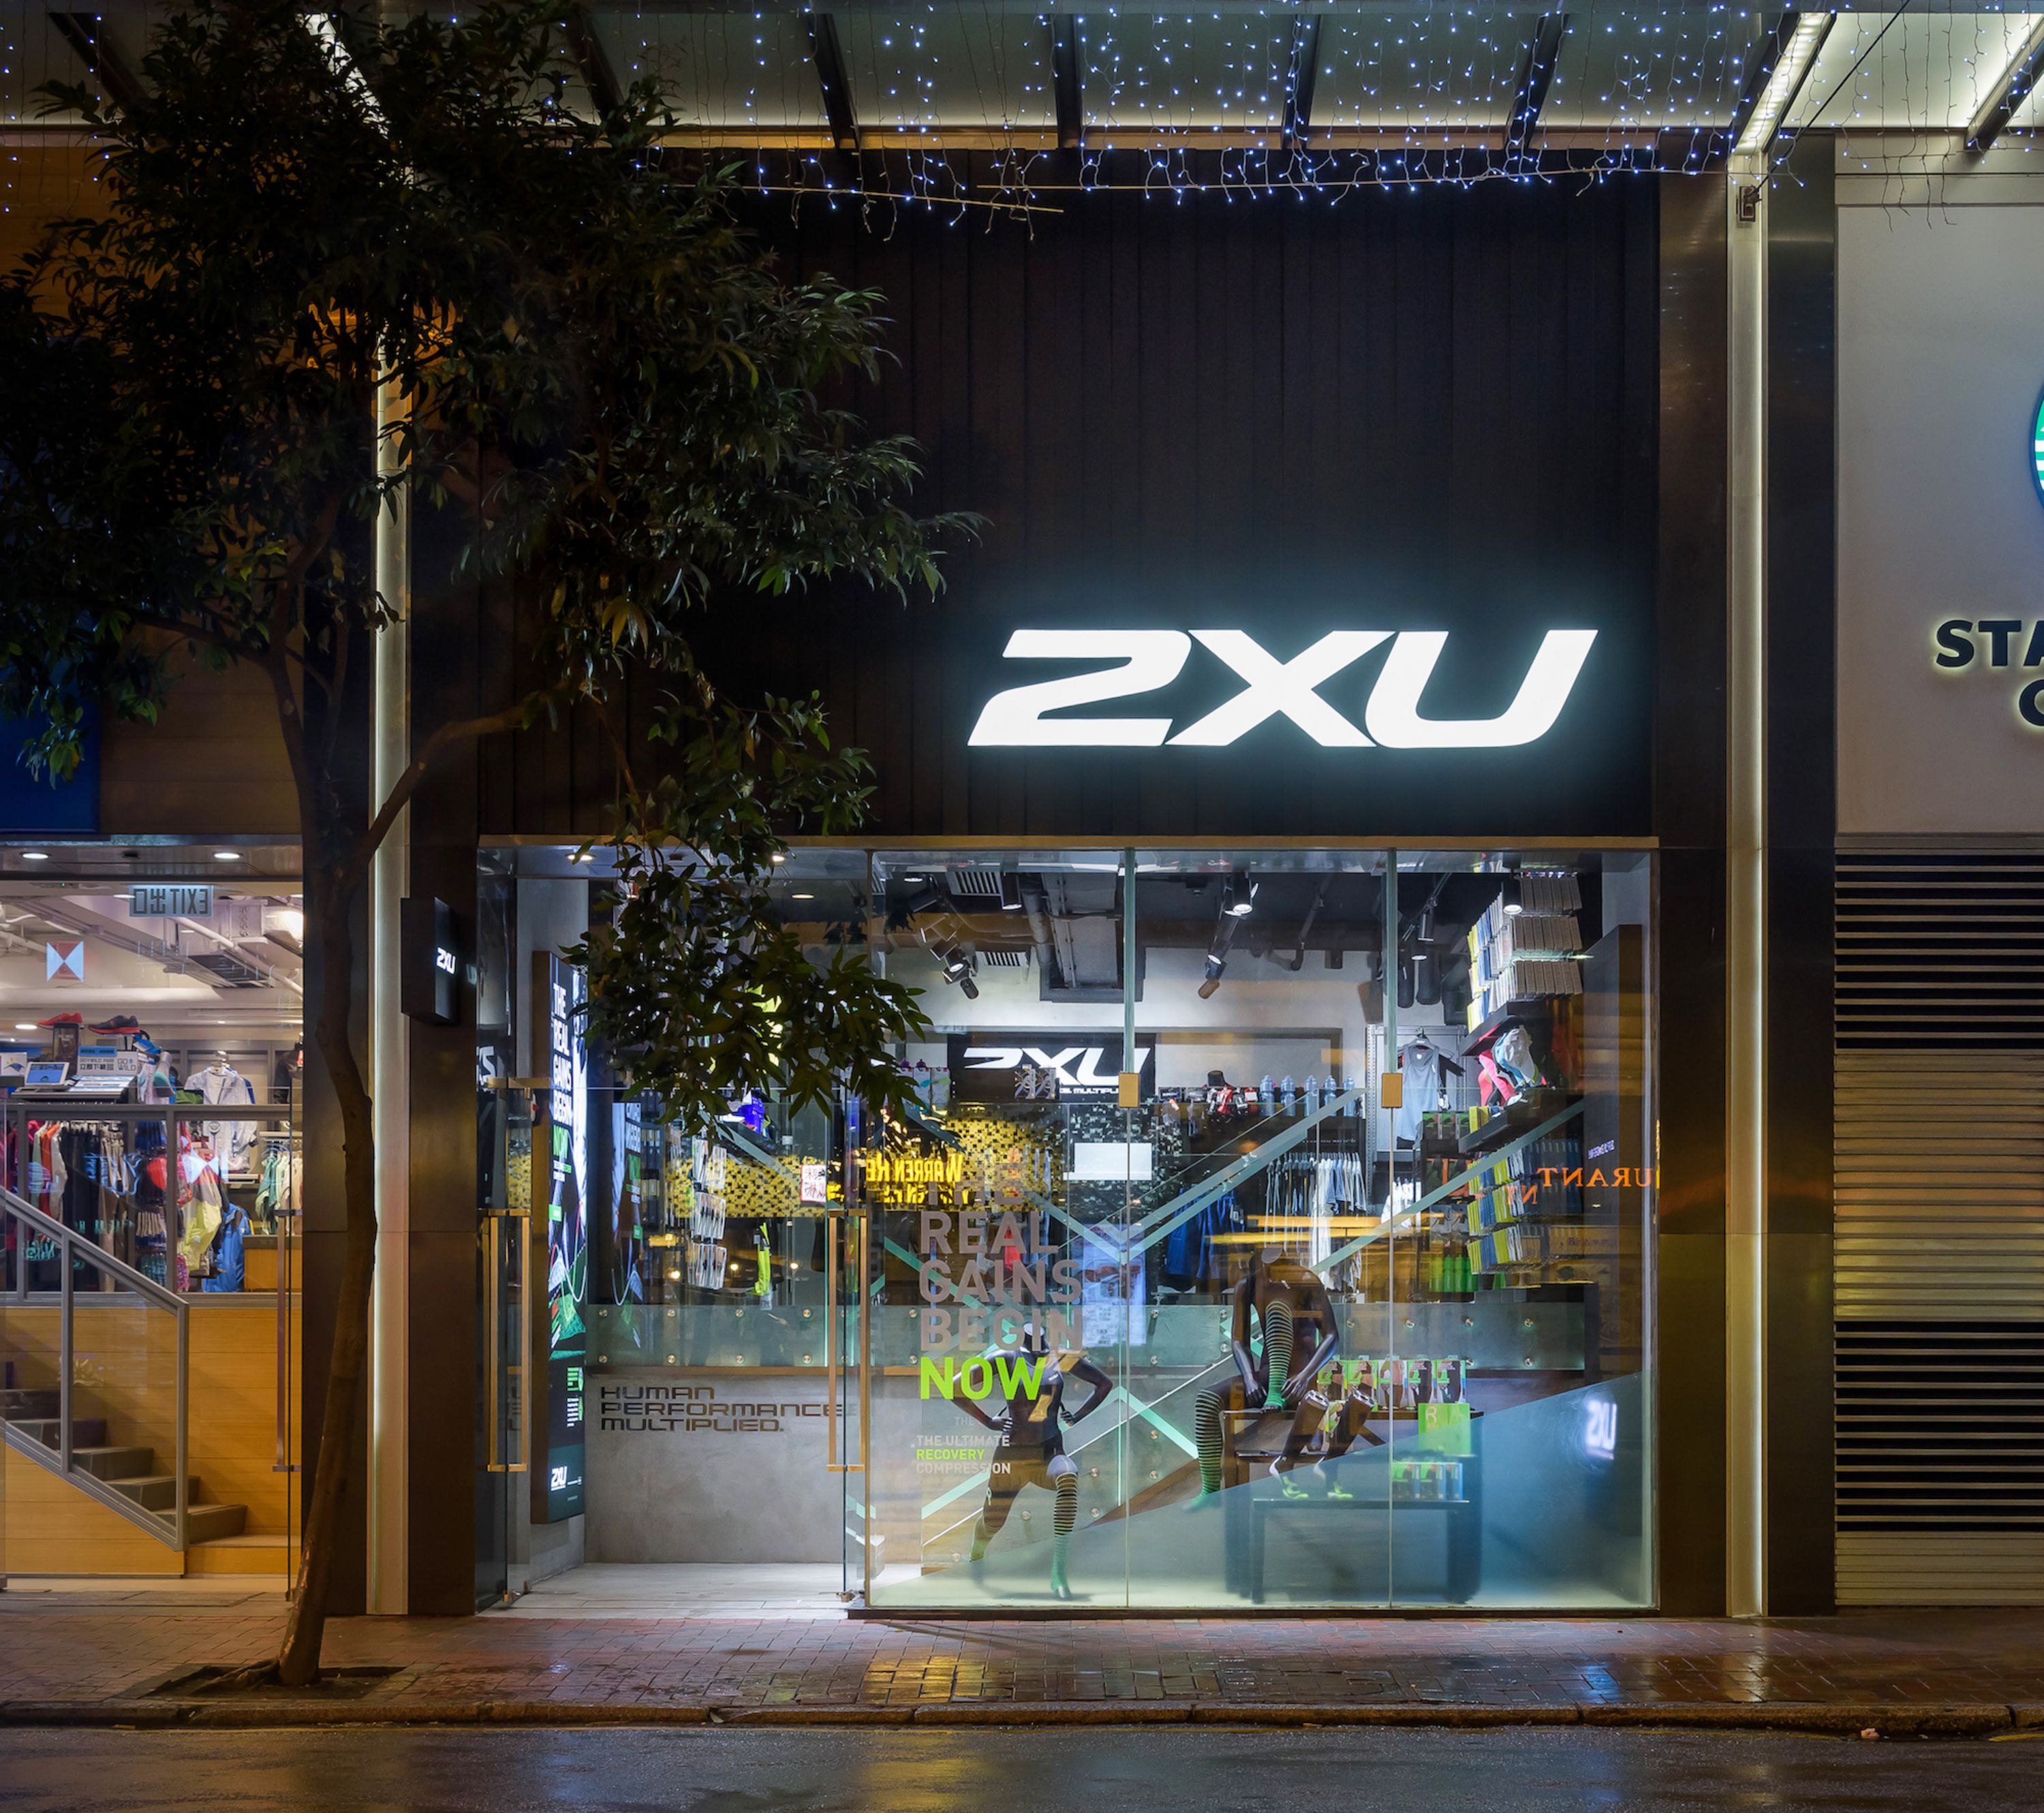 2XU’s first Hong Kong flagship store opens in Causeway Bay